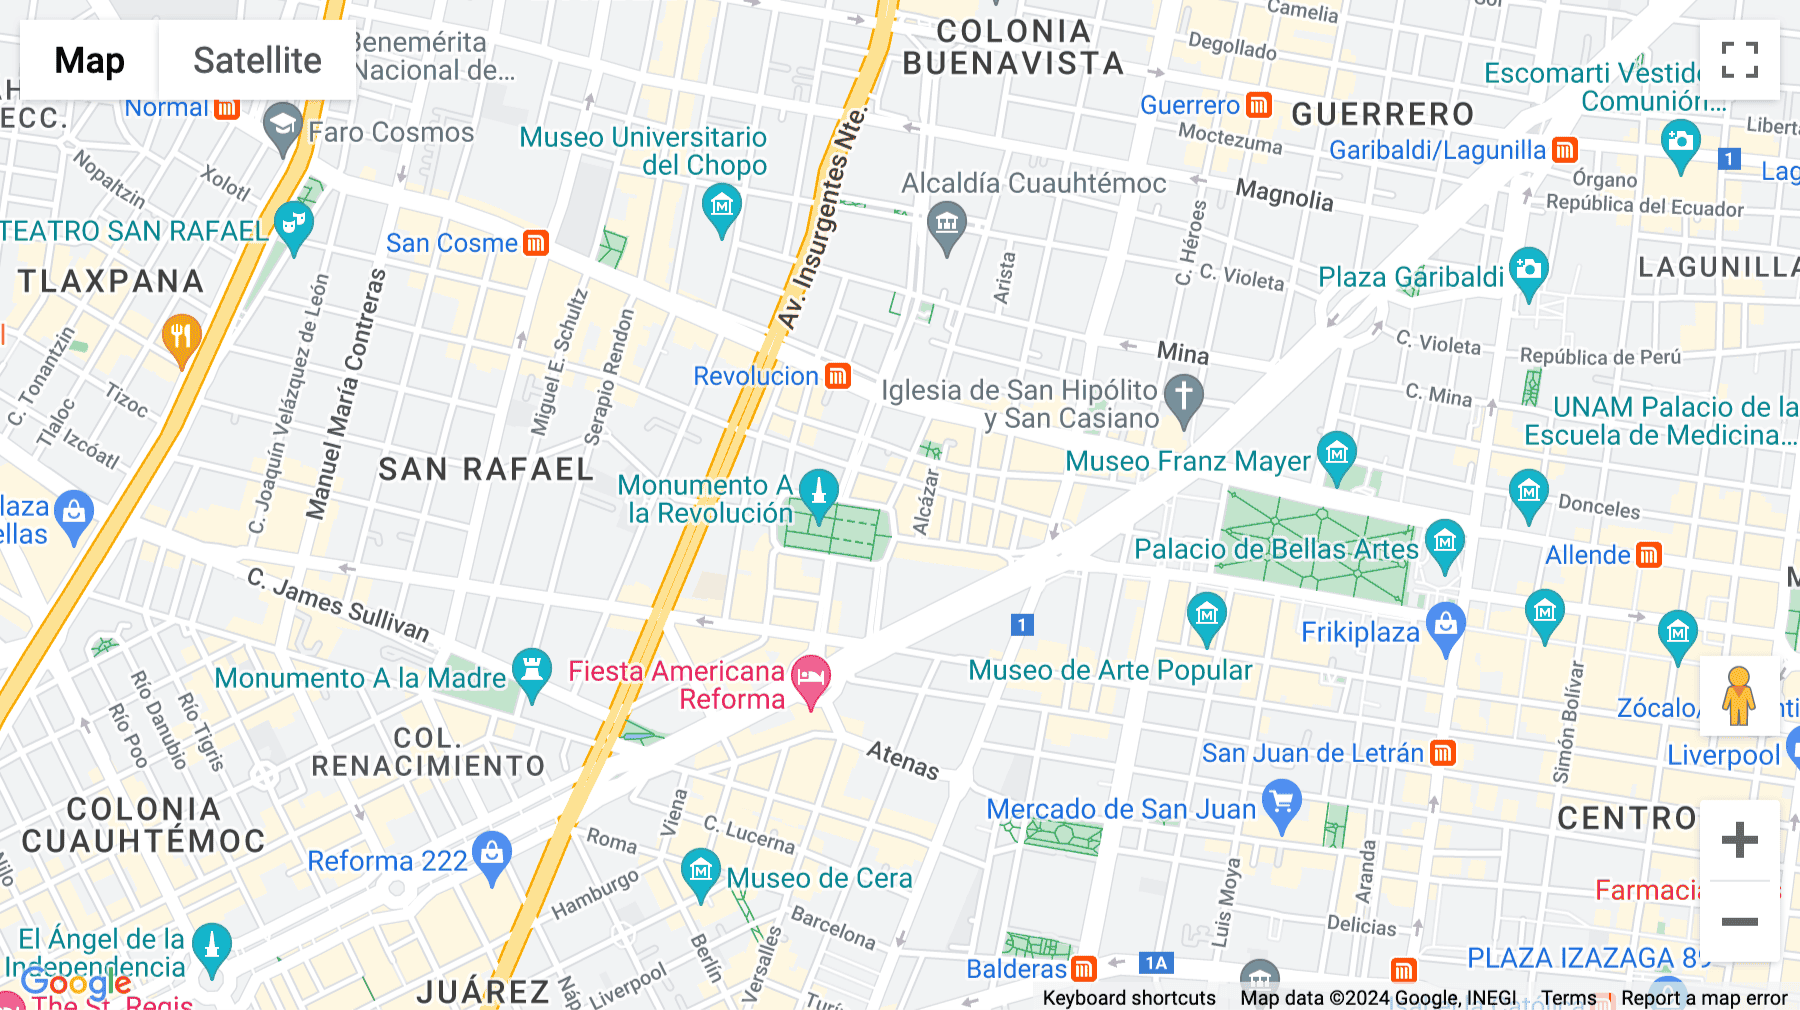 Click for interative map of Plaza de la Republica no 9, Colonia Tabacalera, Mexico City